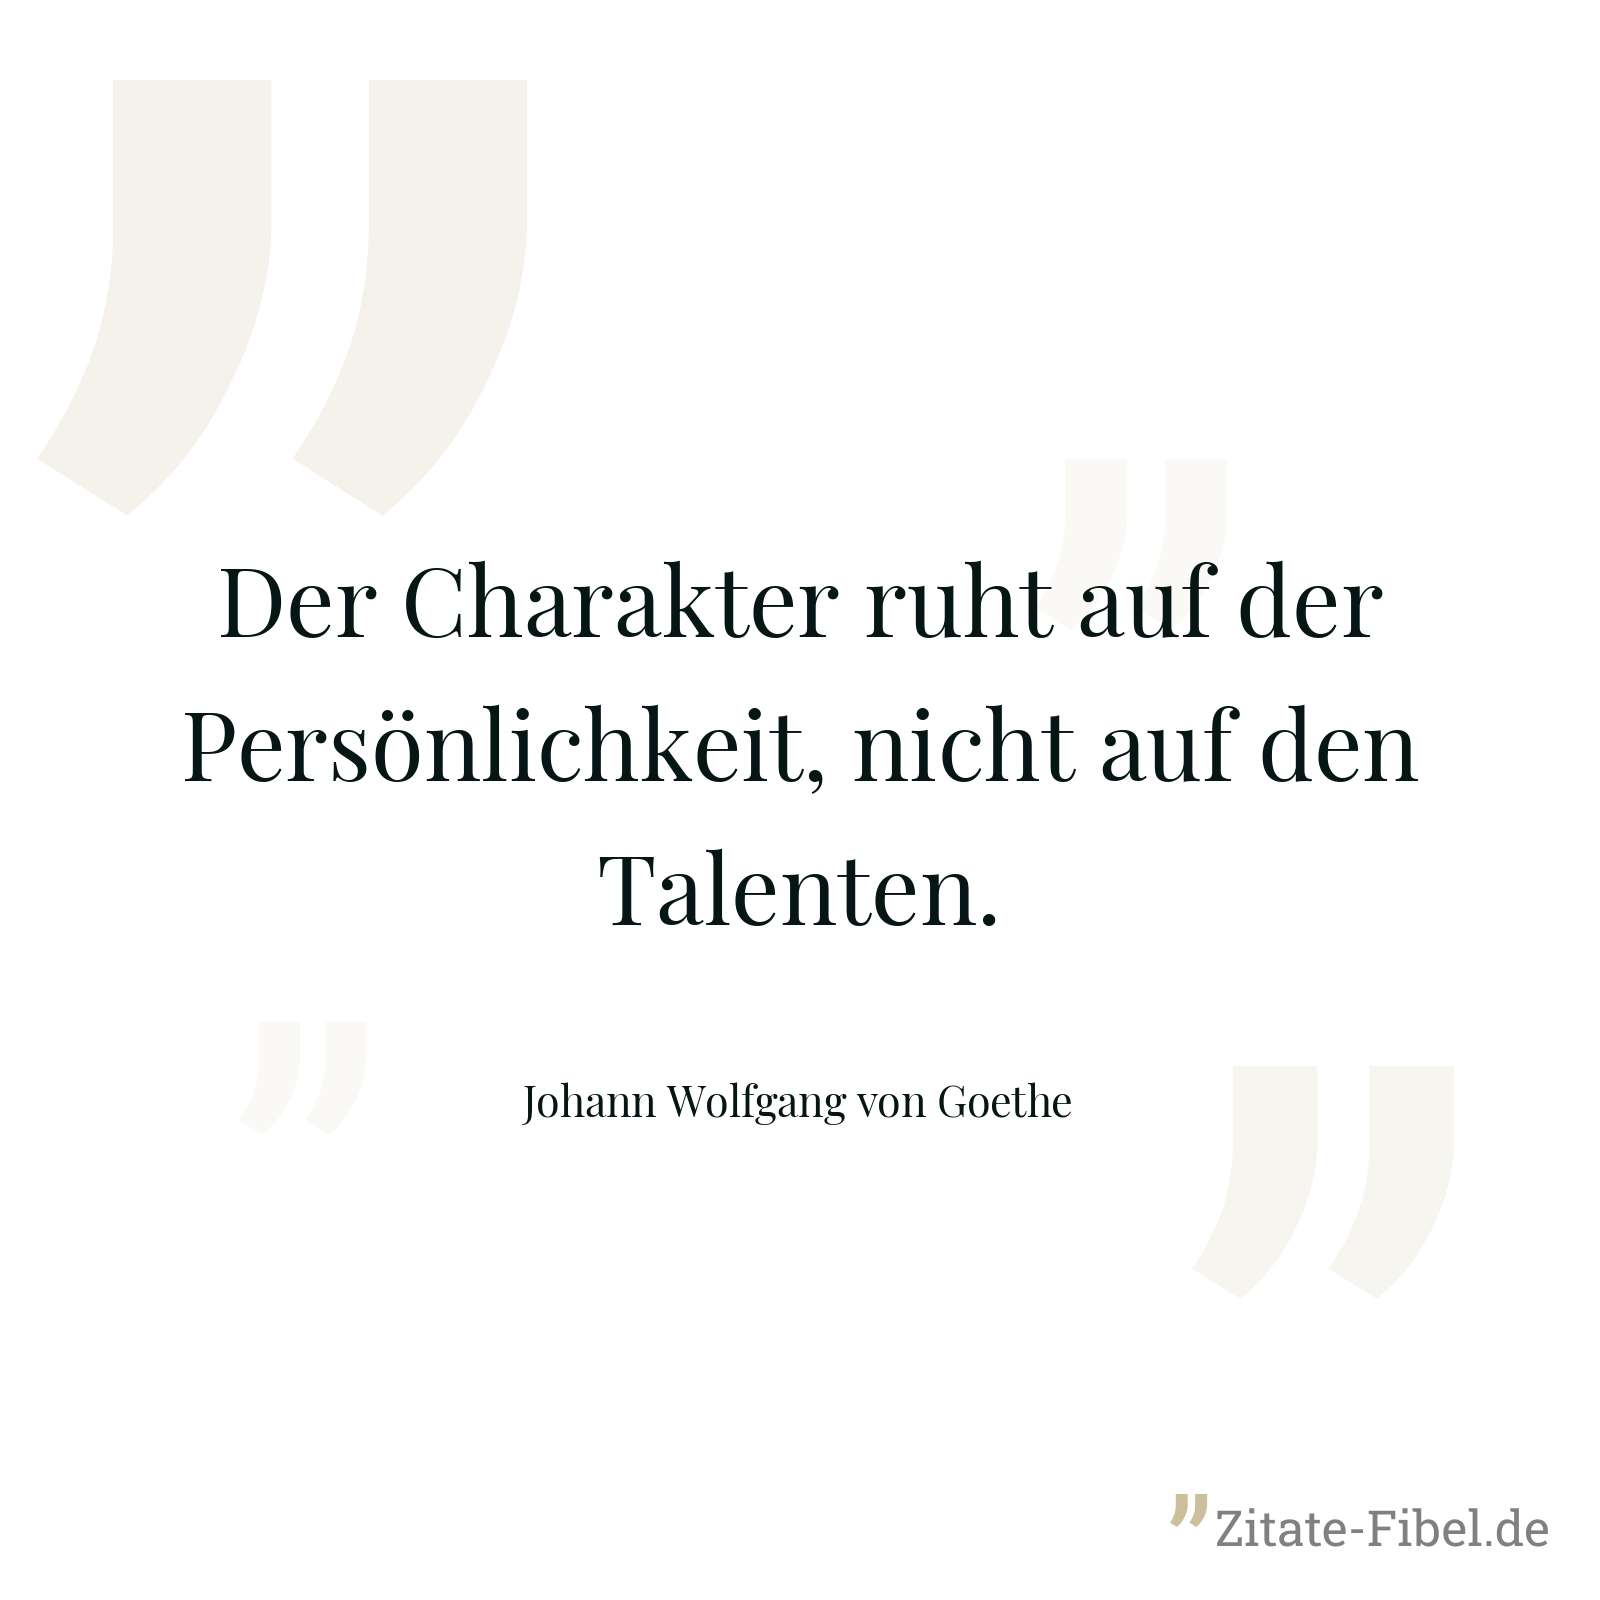 Der Charakter ruht auf der Persönlichkeit, nicht auf den Talenten. - Johann Wolfgang von Goethe